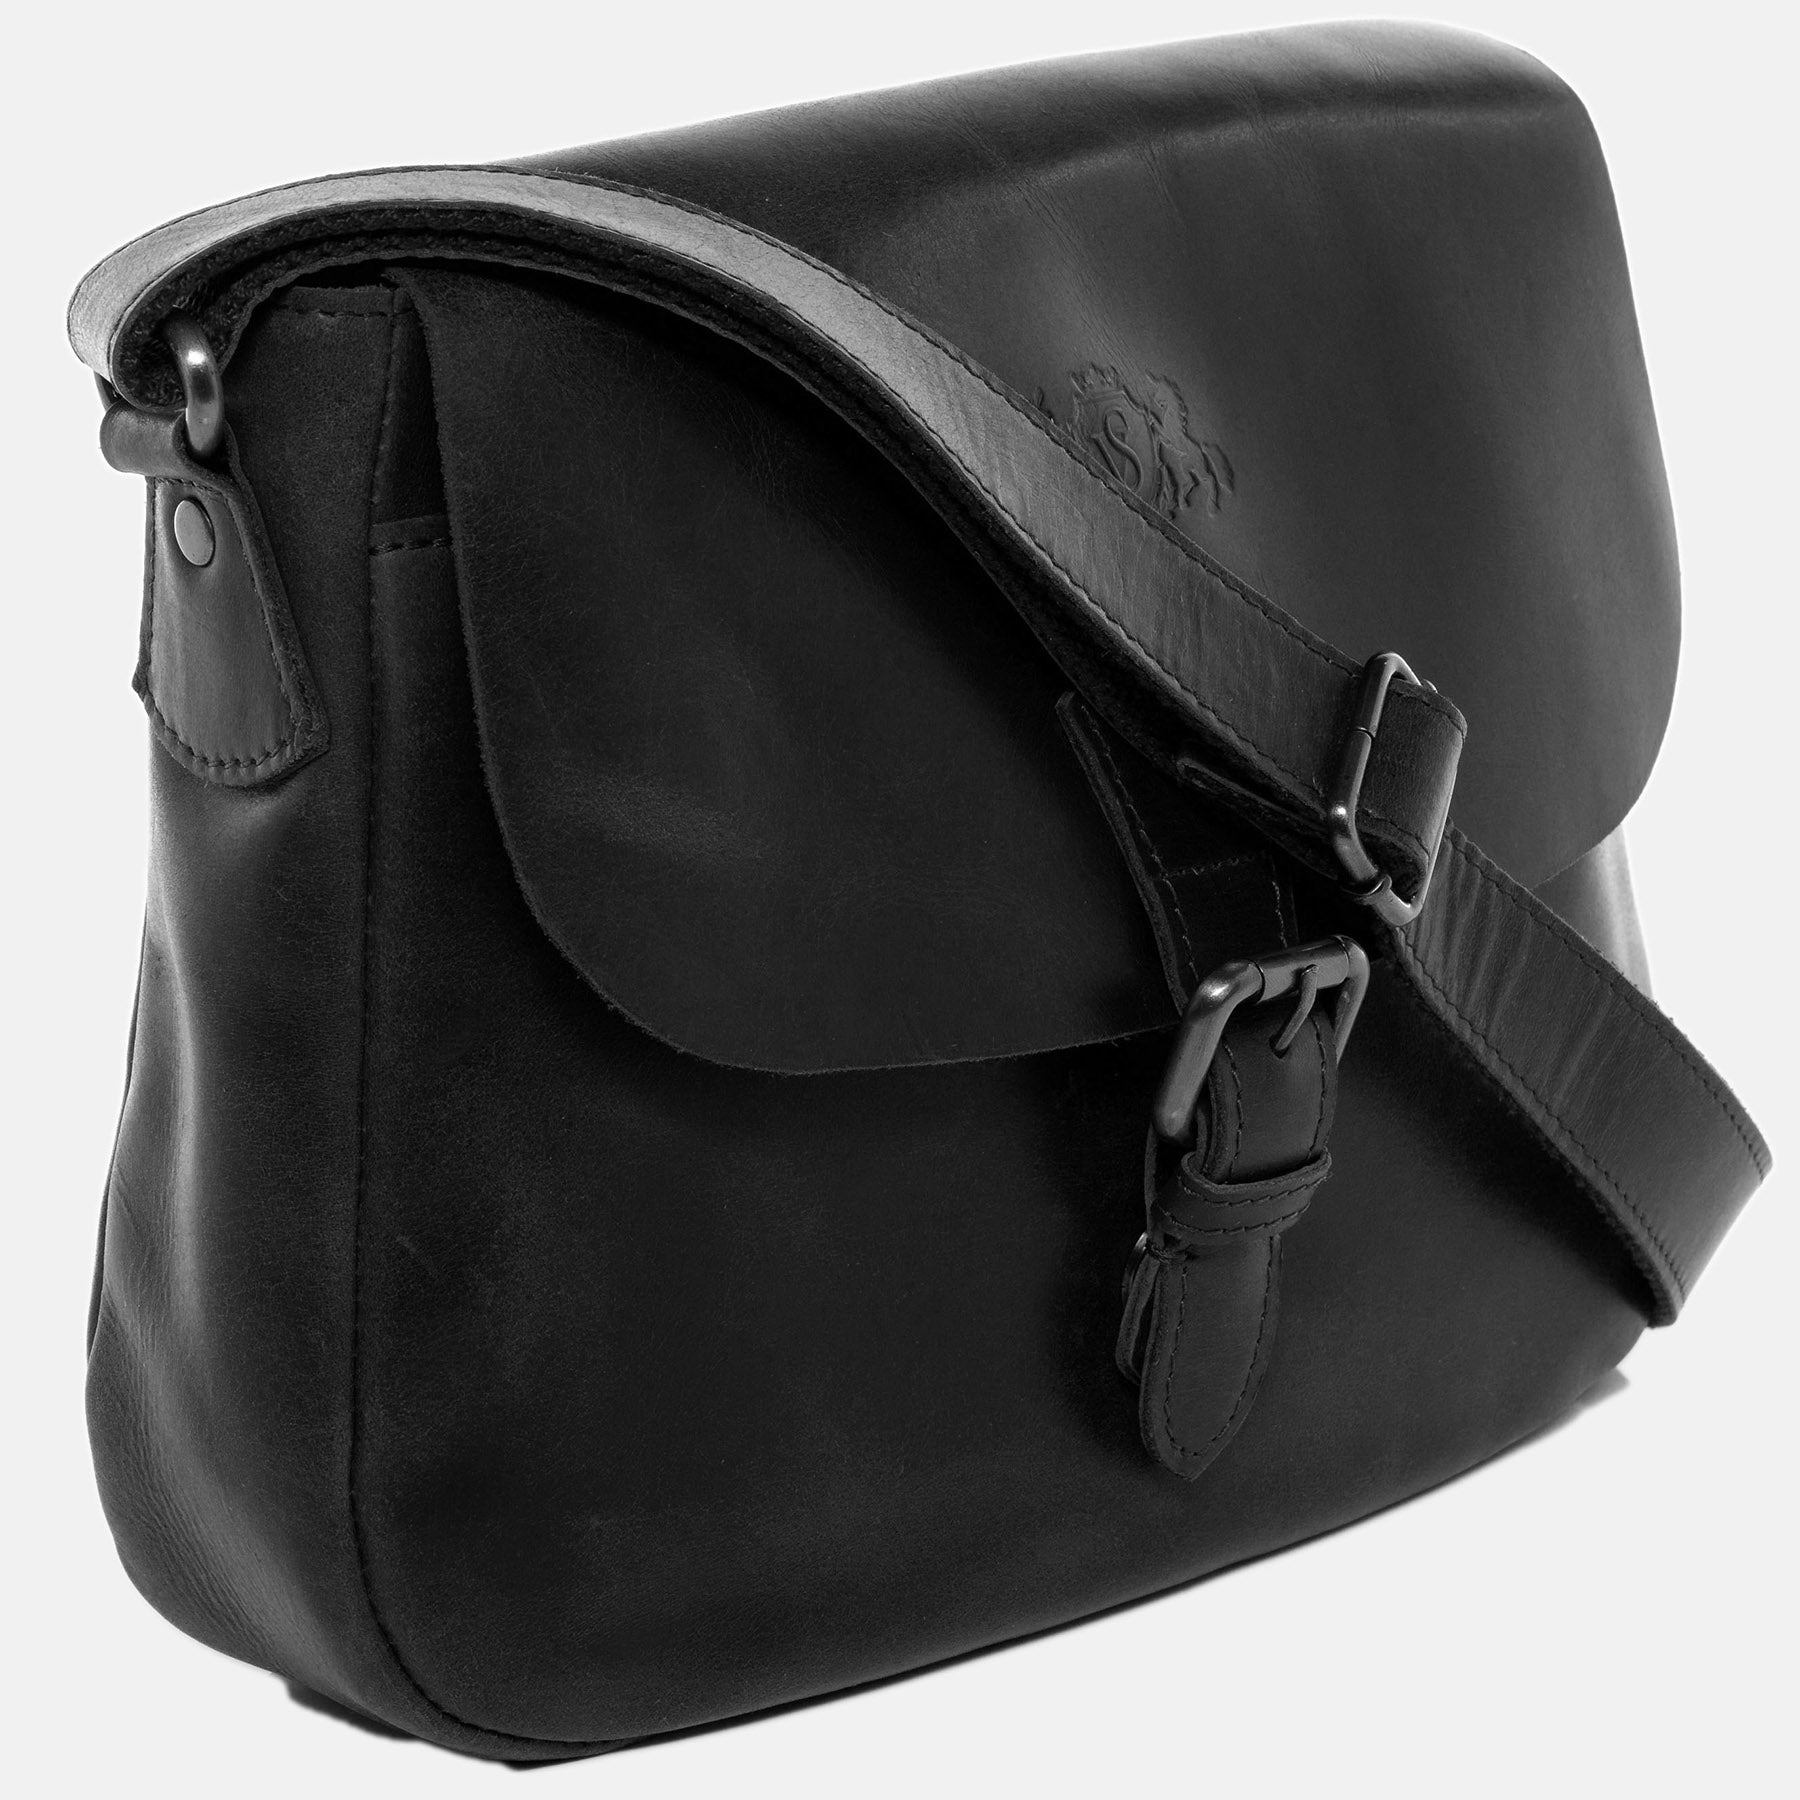 Shoulder bag YALE smooth leather black